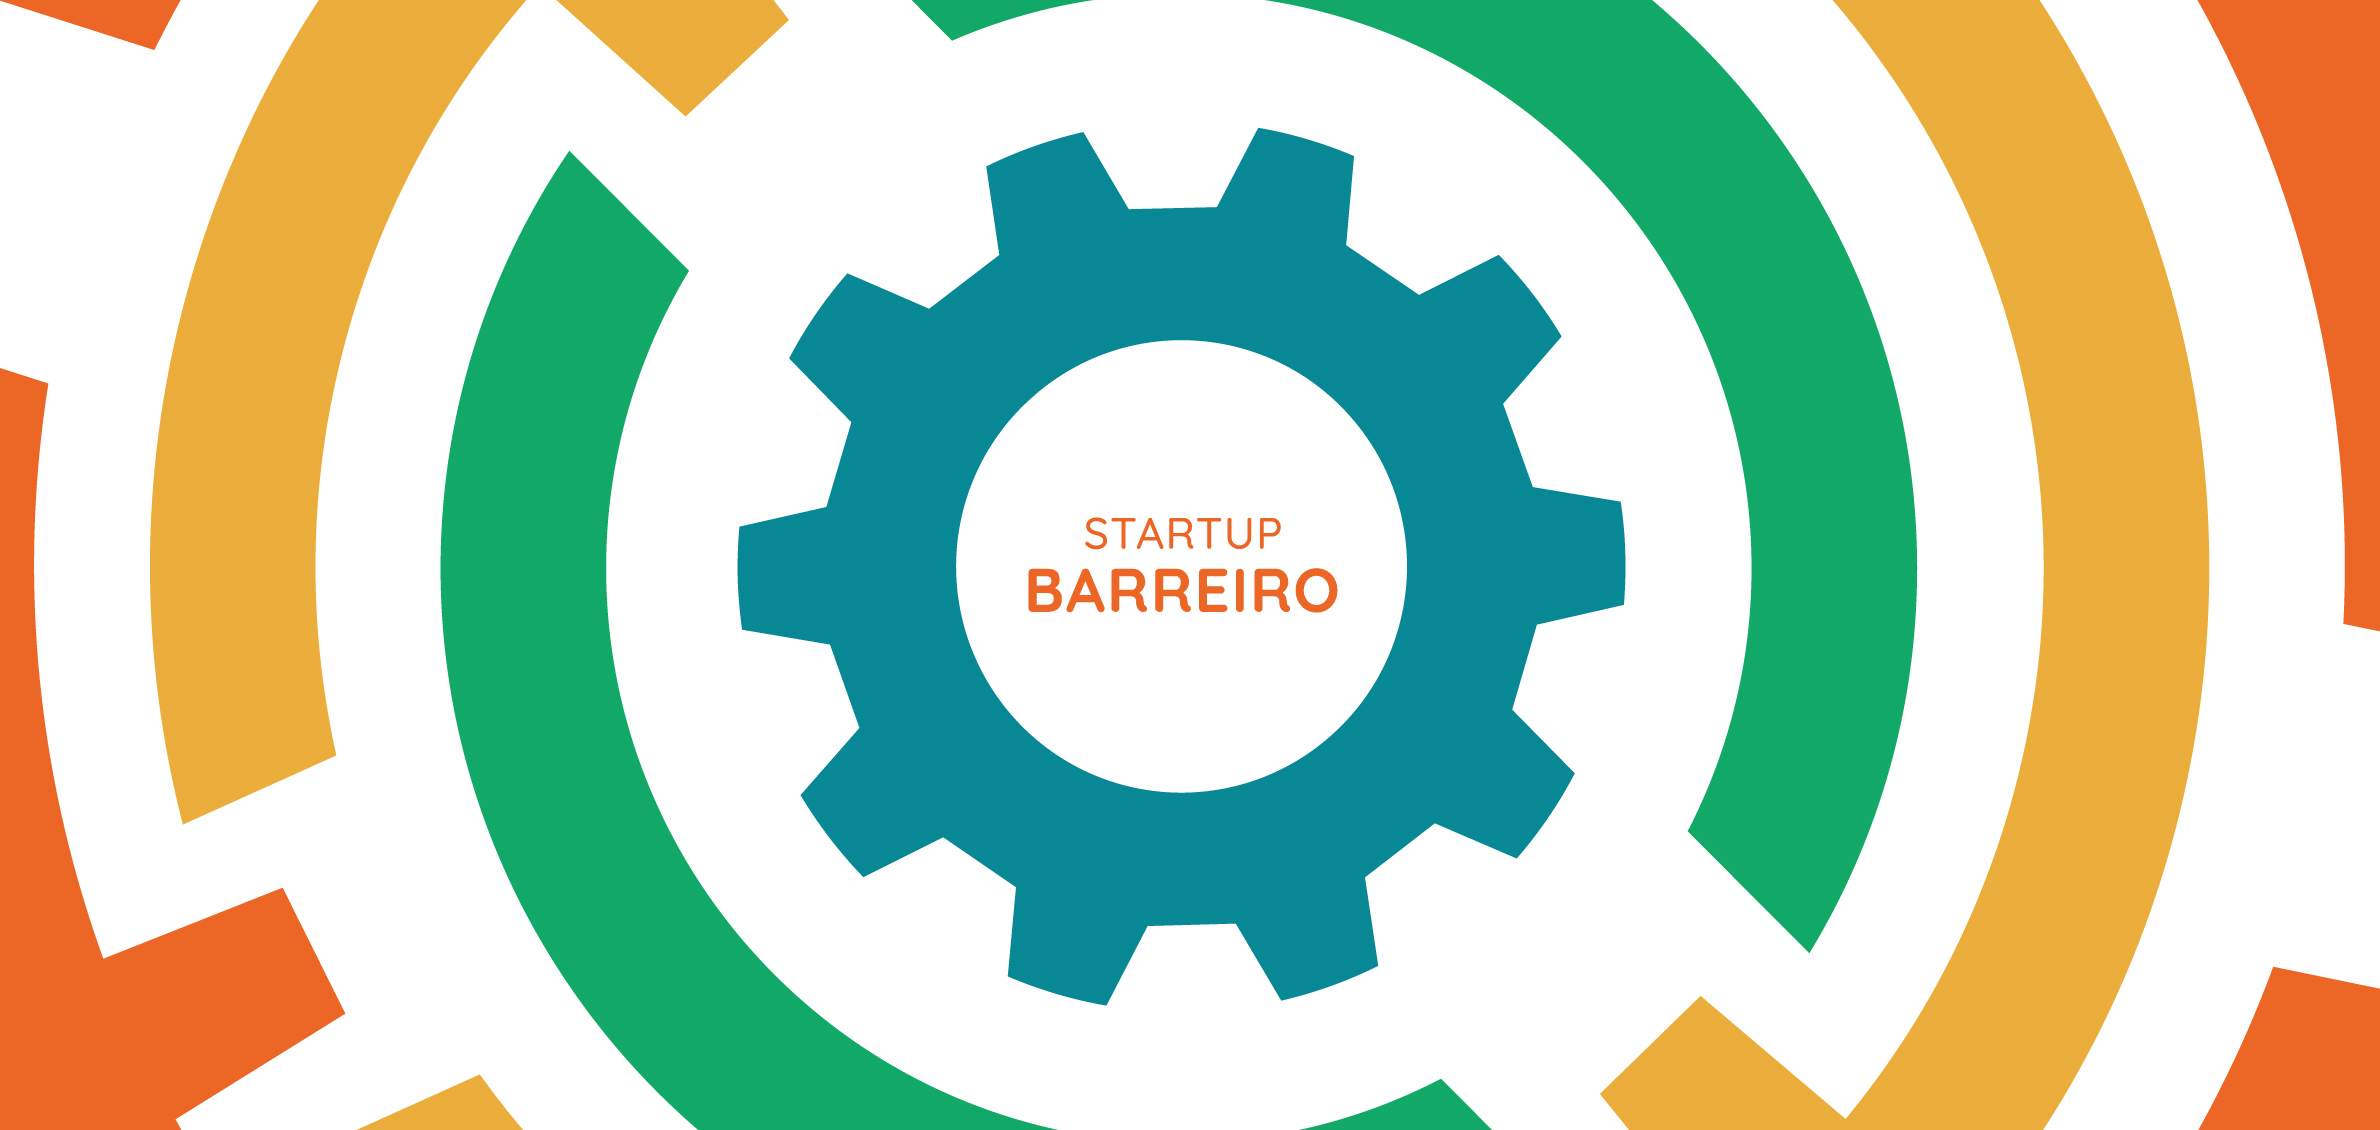 Visite a incubadora municipal, StartUp Barreiro, em www.startupbarreiro.pt